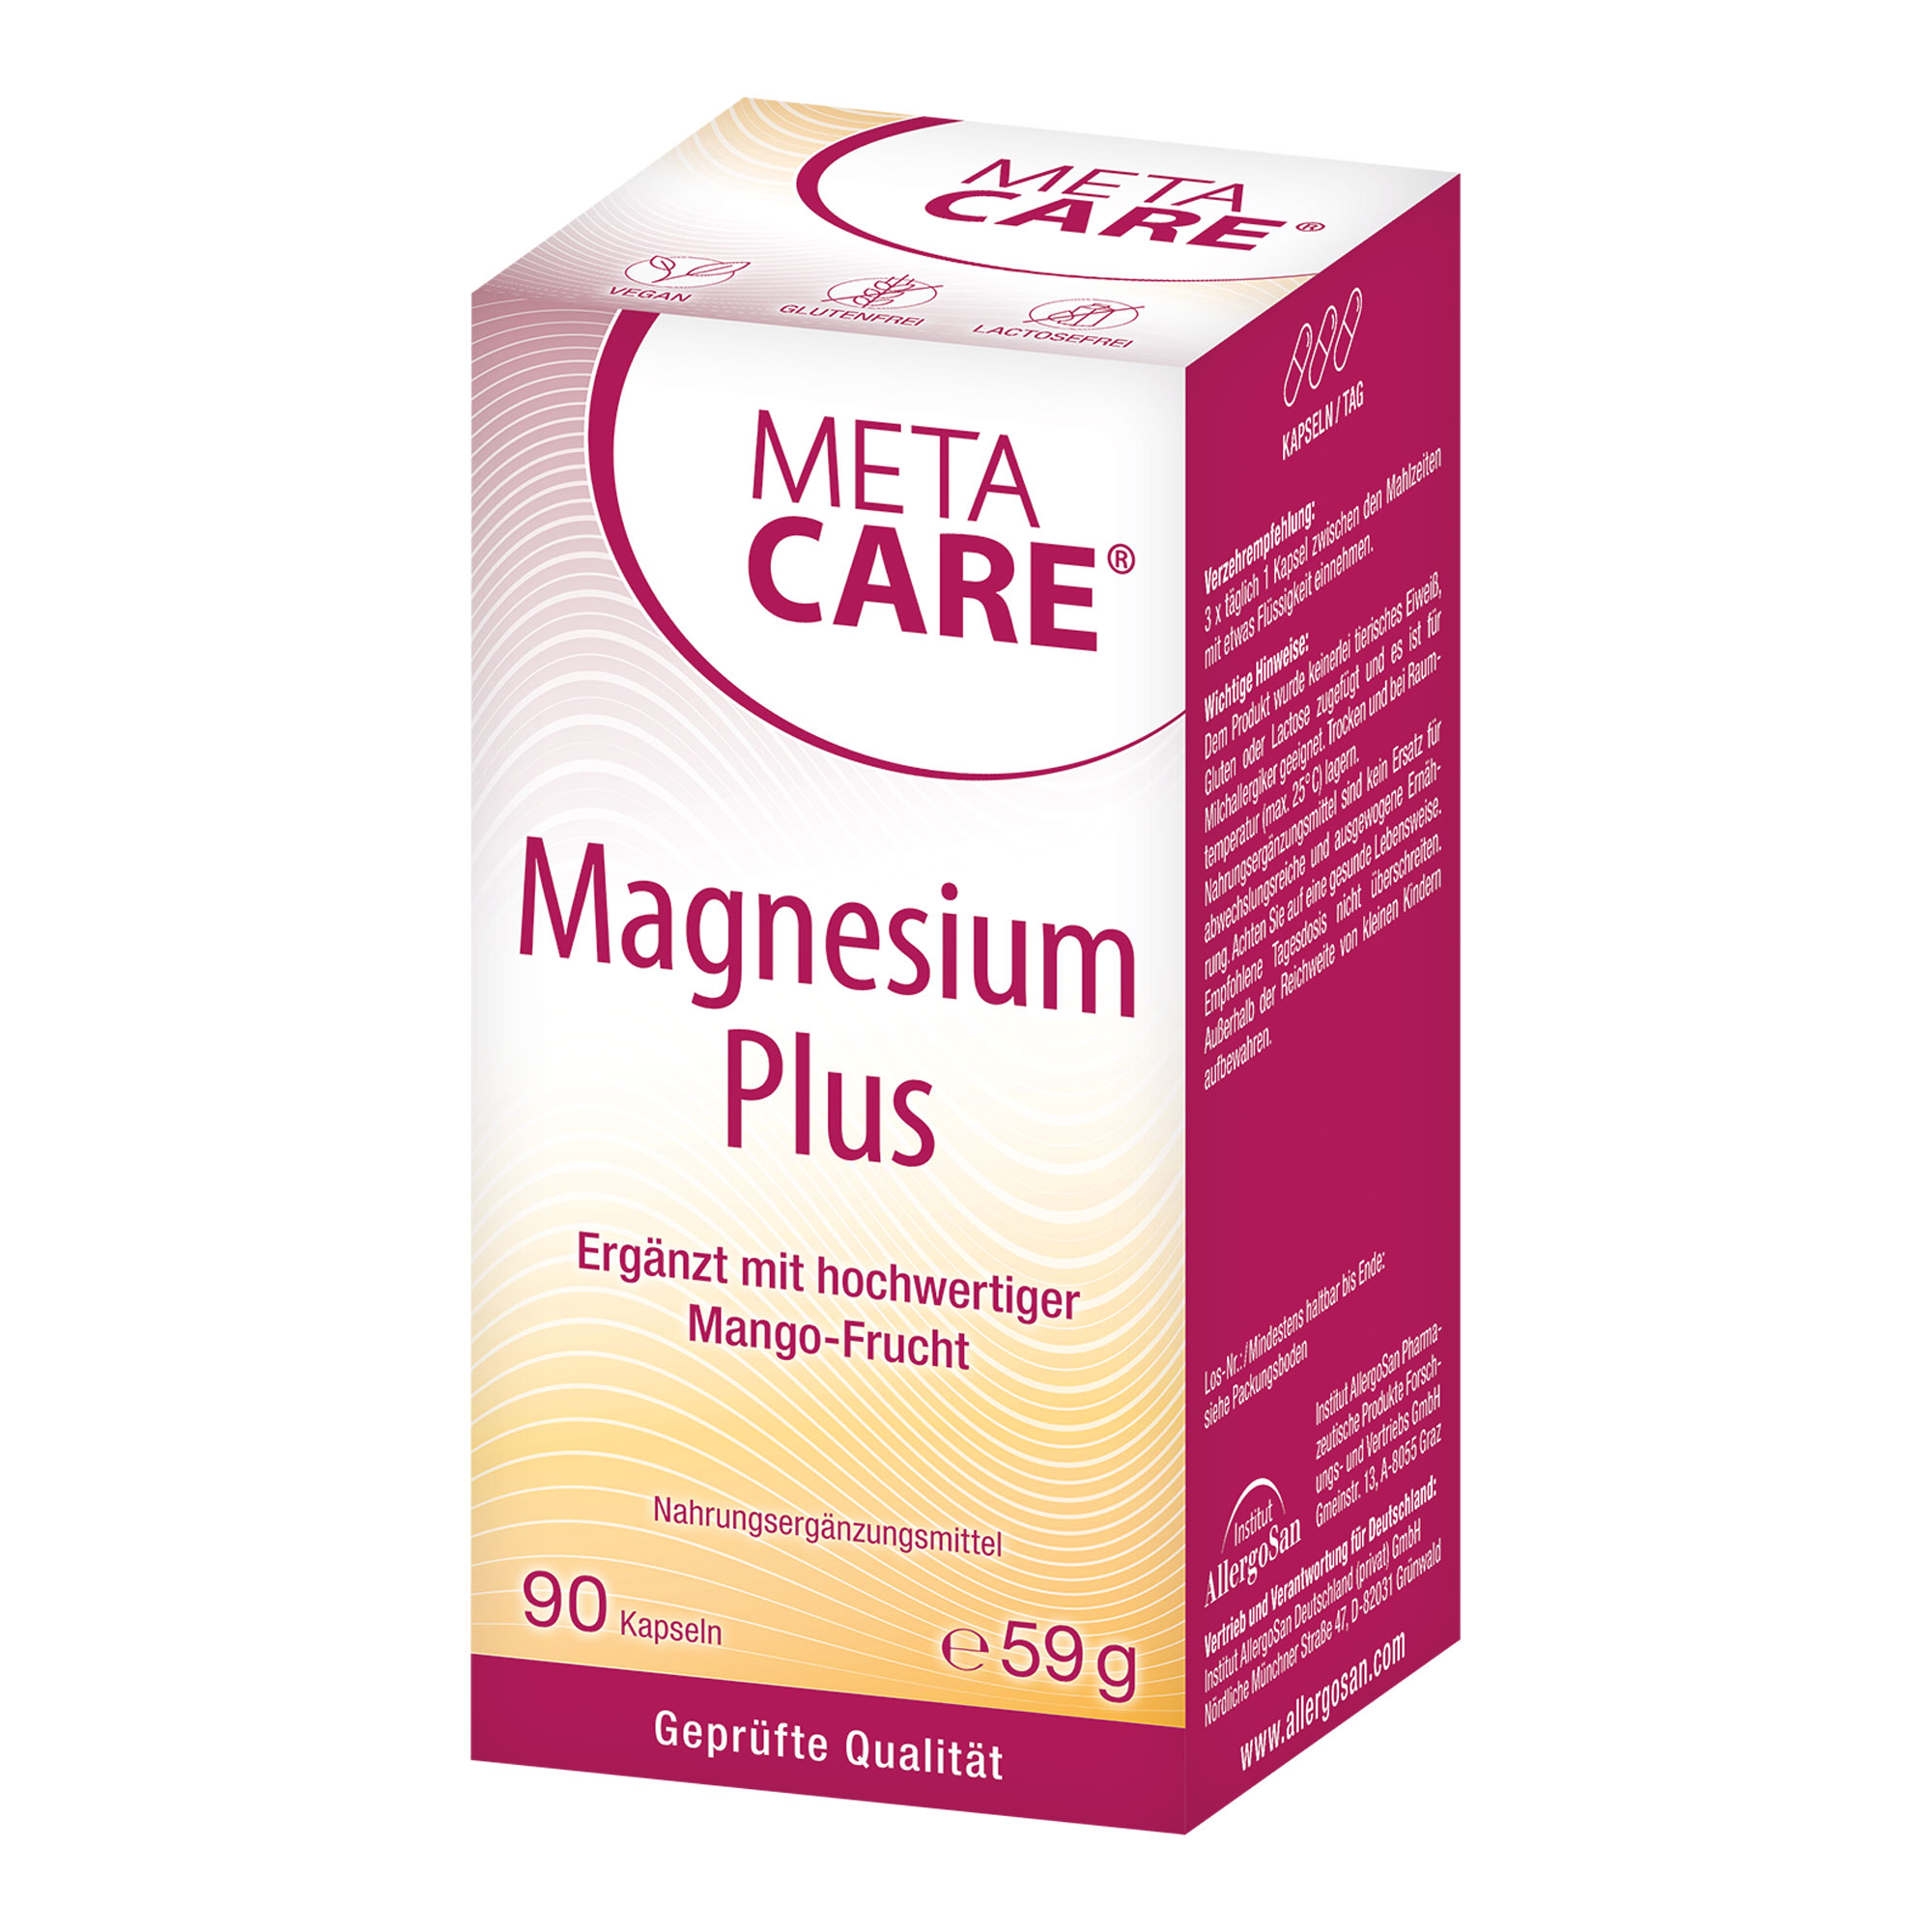 Bioverfügbares Magnesium ergänzt durch Vitamin D3 und Mango-Fruchtpulver.